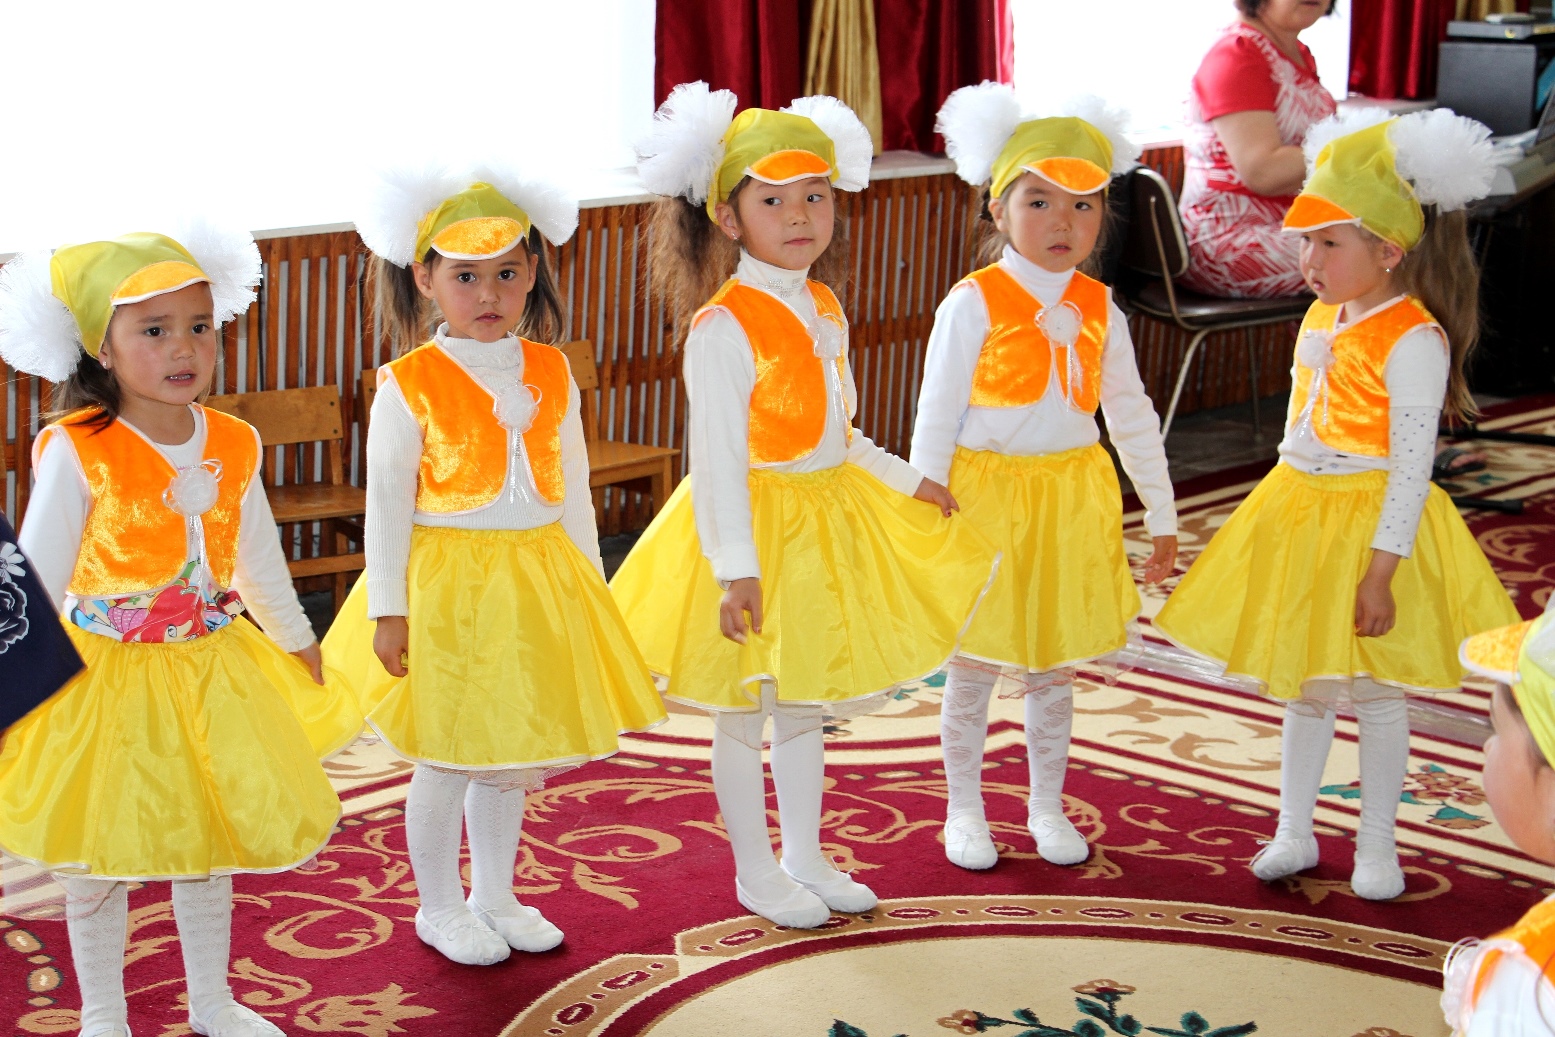 Cinq petites filles en costume jaune lors de la fête d’inauguration de l’école enfantine